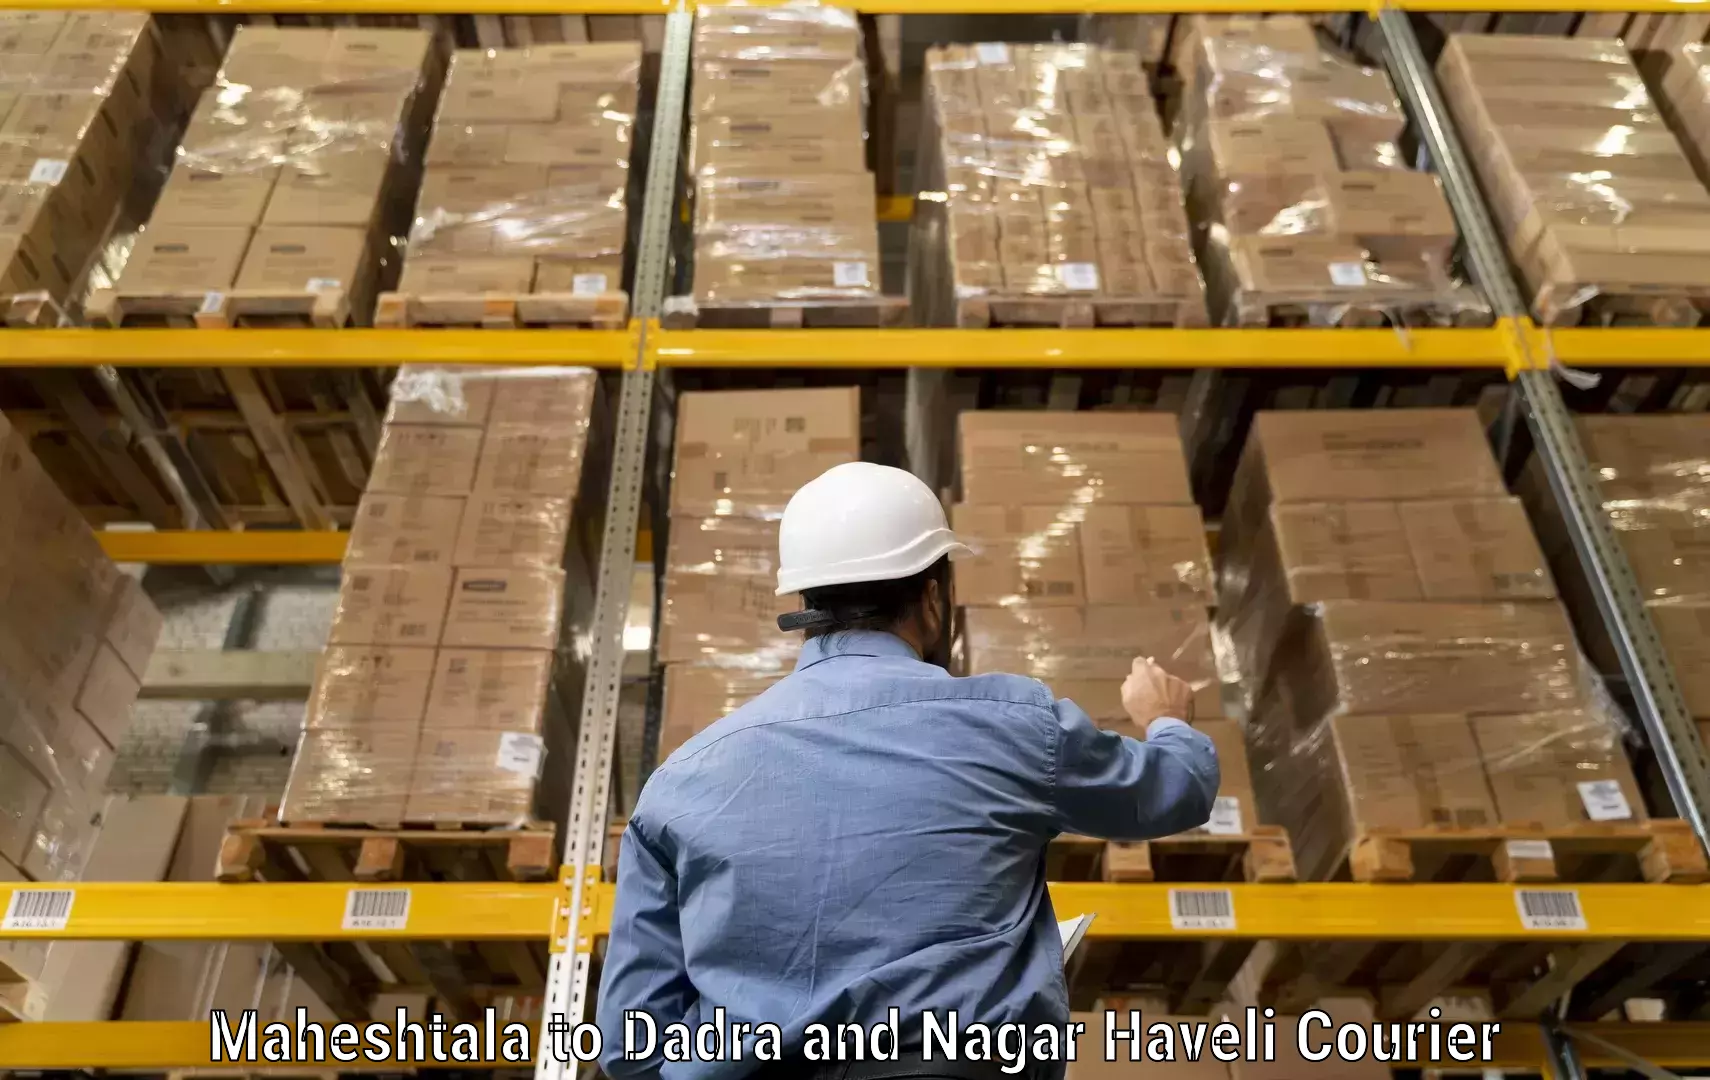 Global logistics network Maheshtala to Silvassa